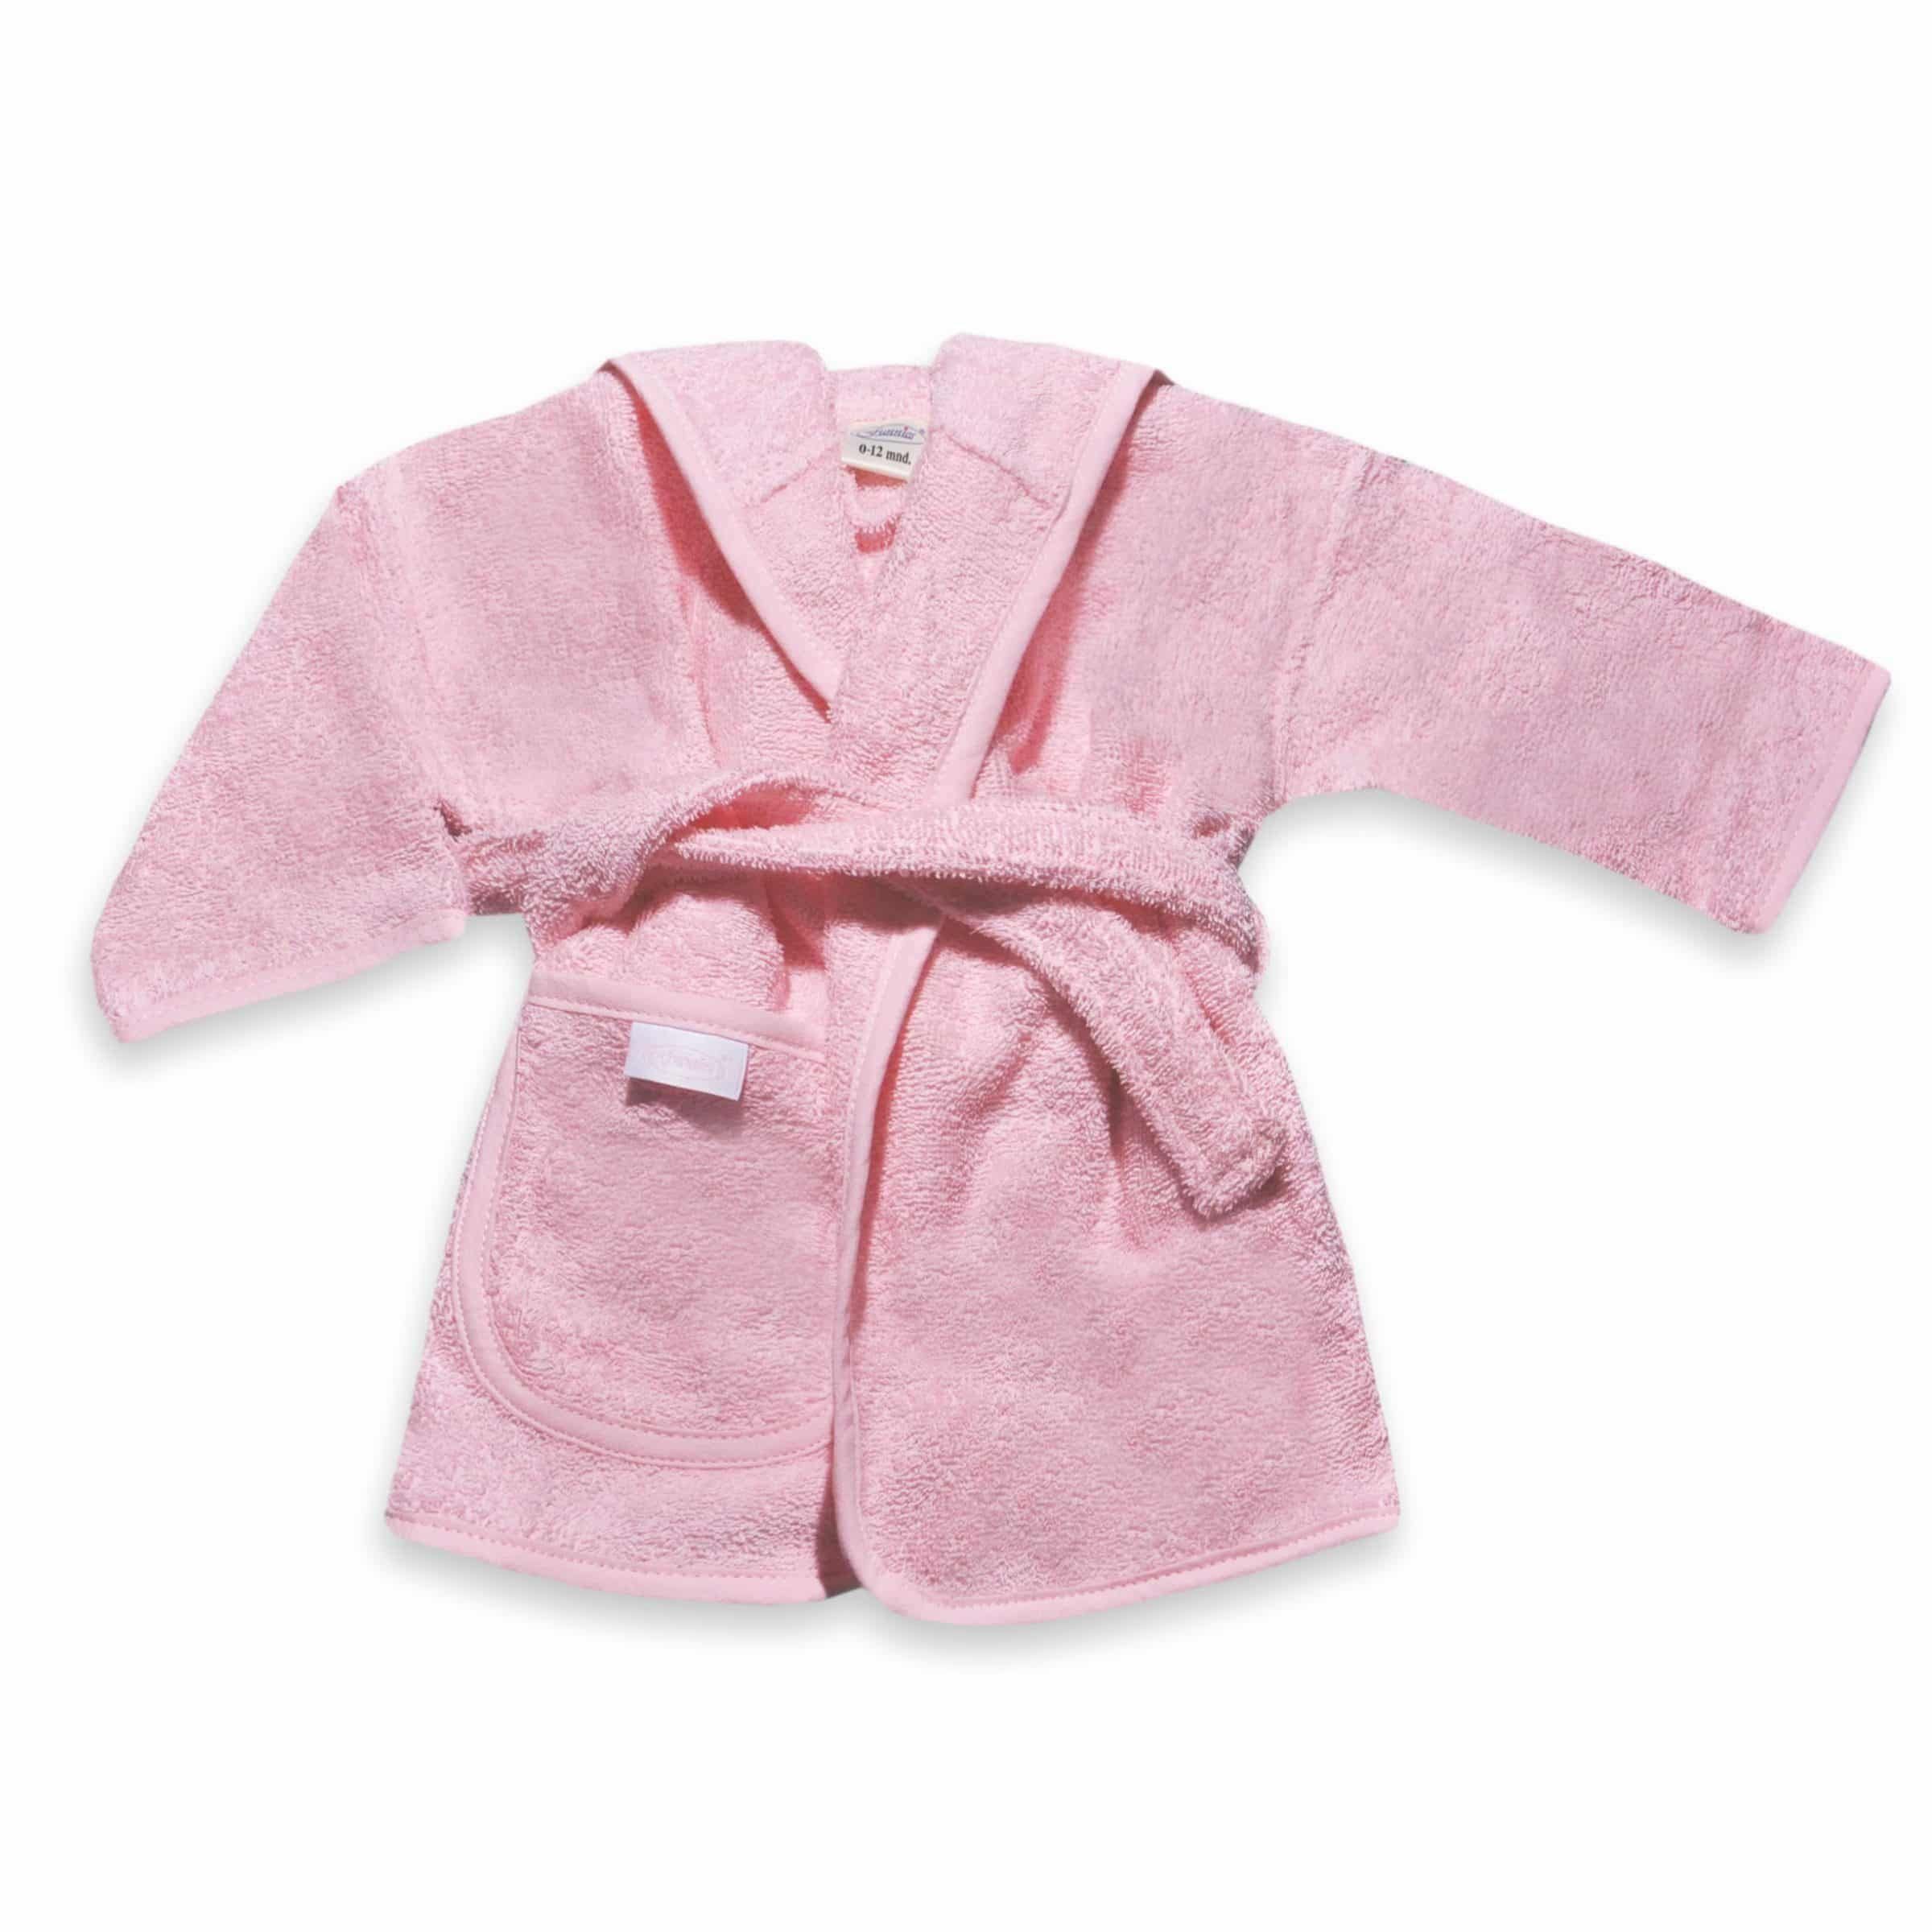 badjas met naam baby roze